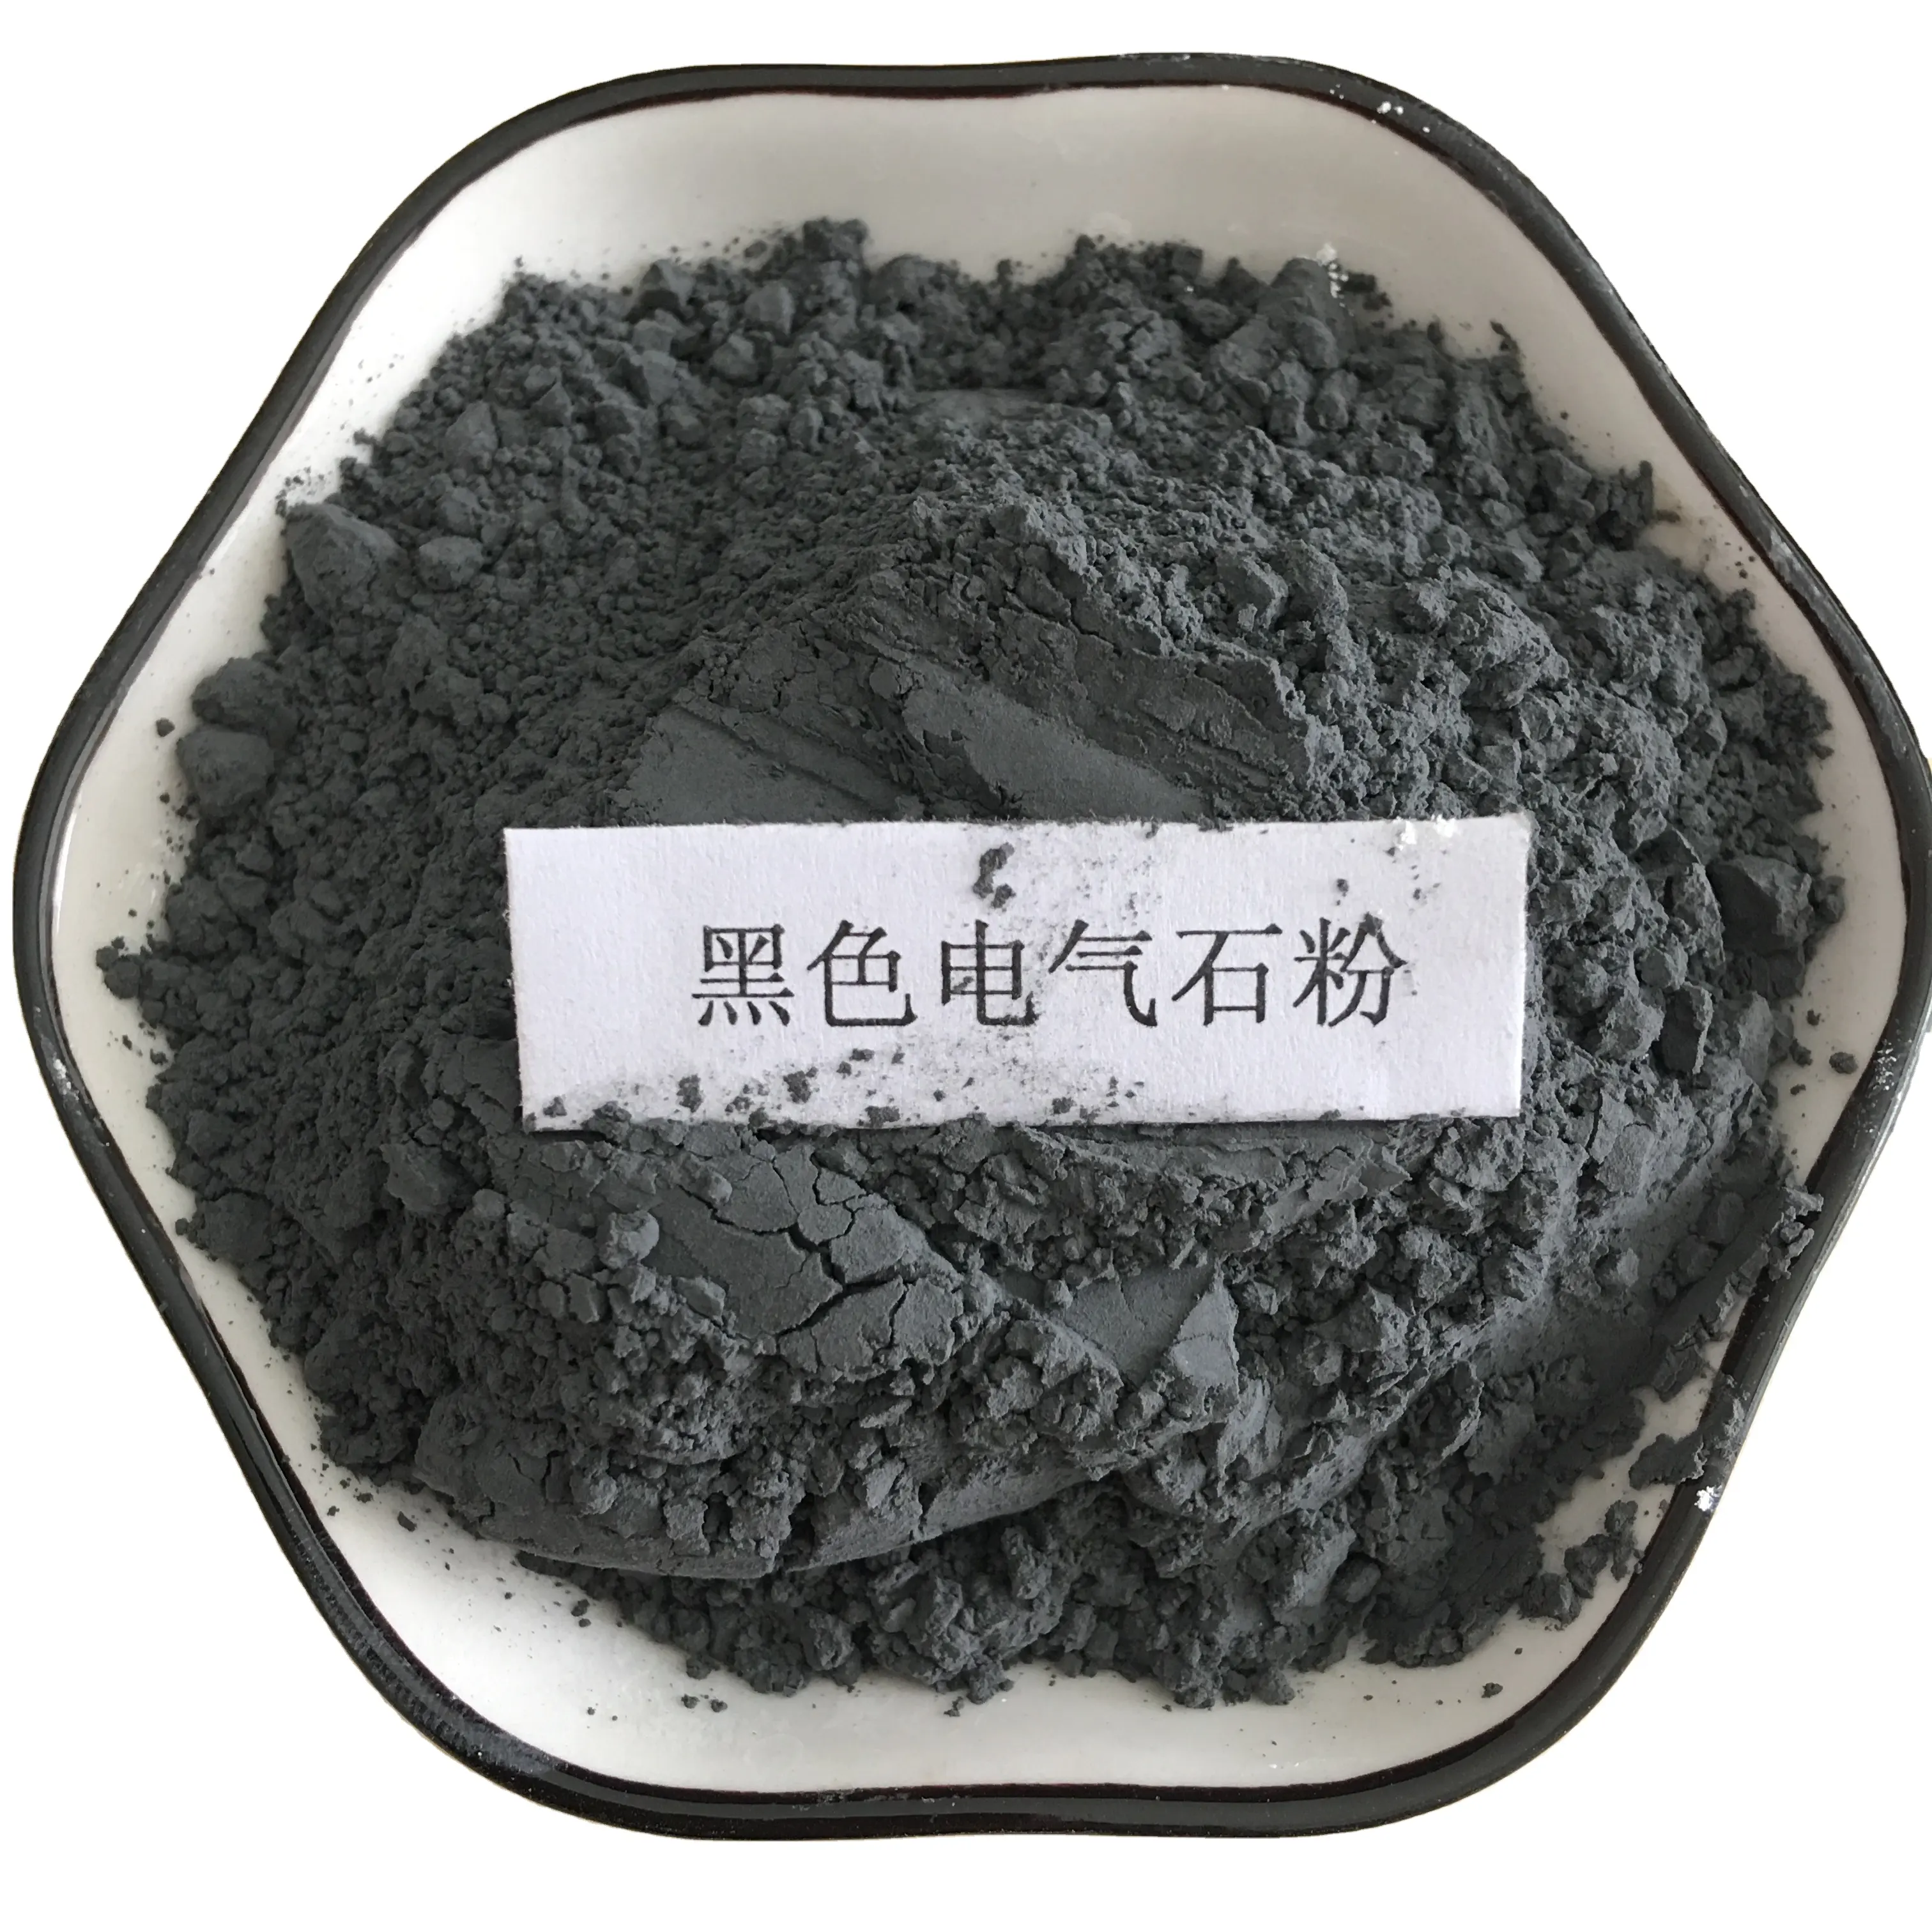 Beliebtes Produkt Gesundheits produkte Hersteller schwarzes Turmalin pulver